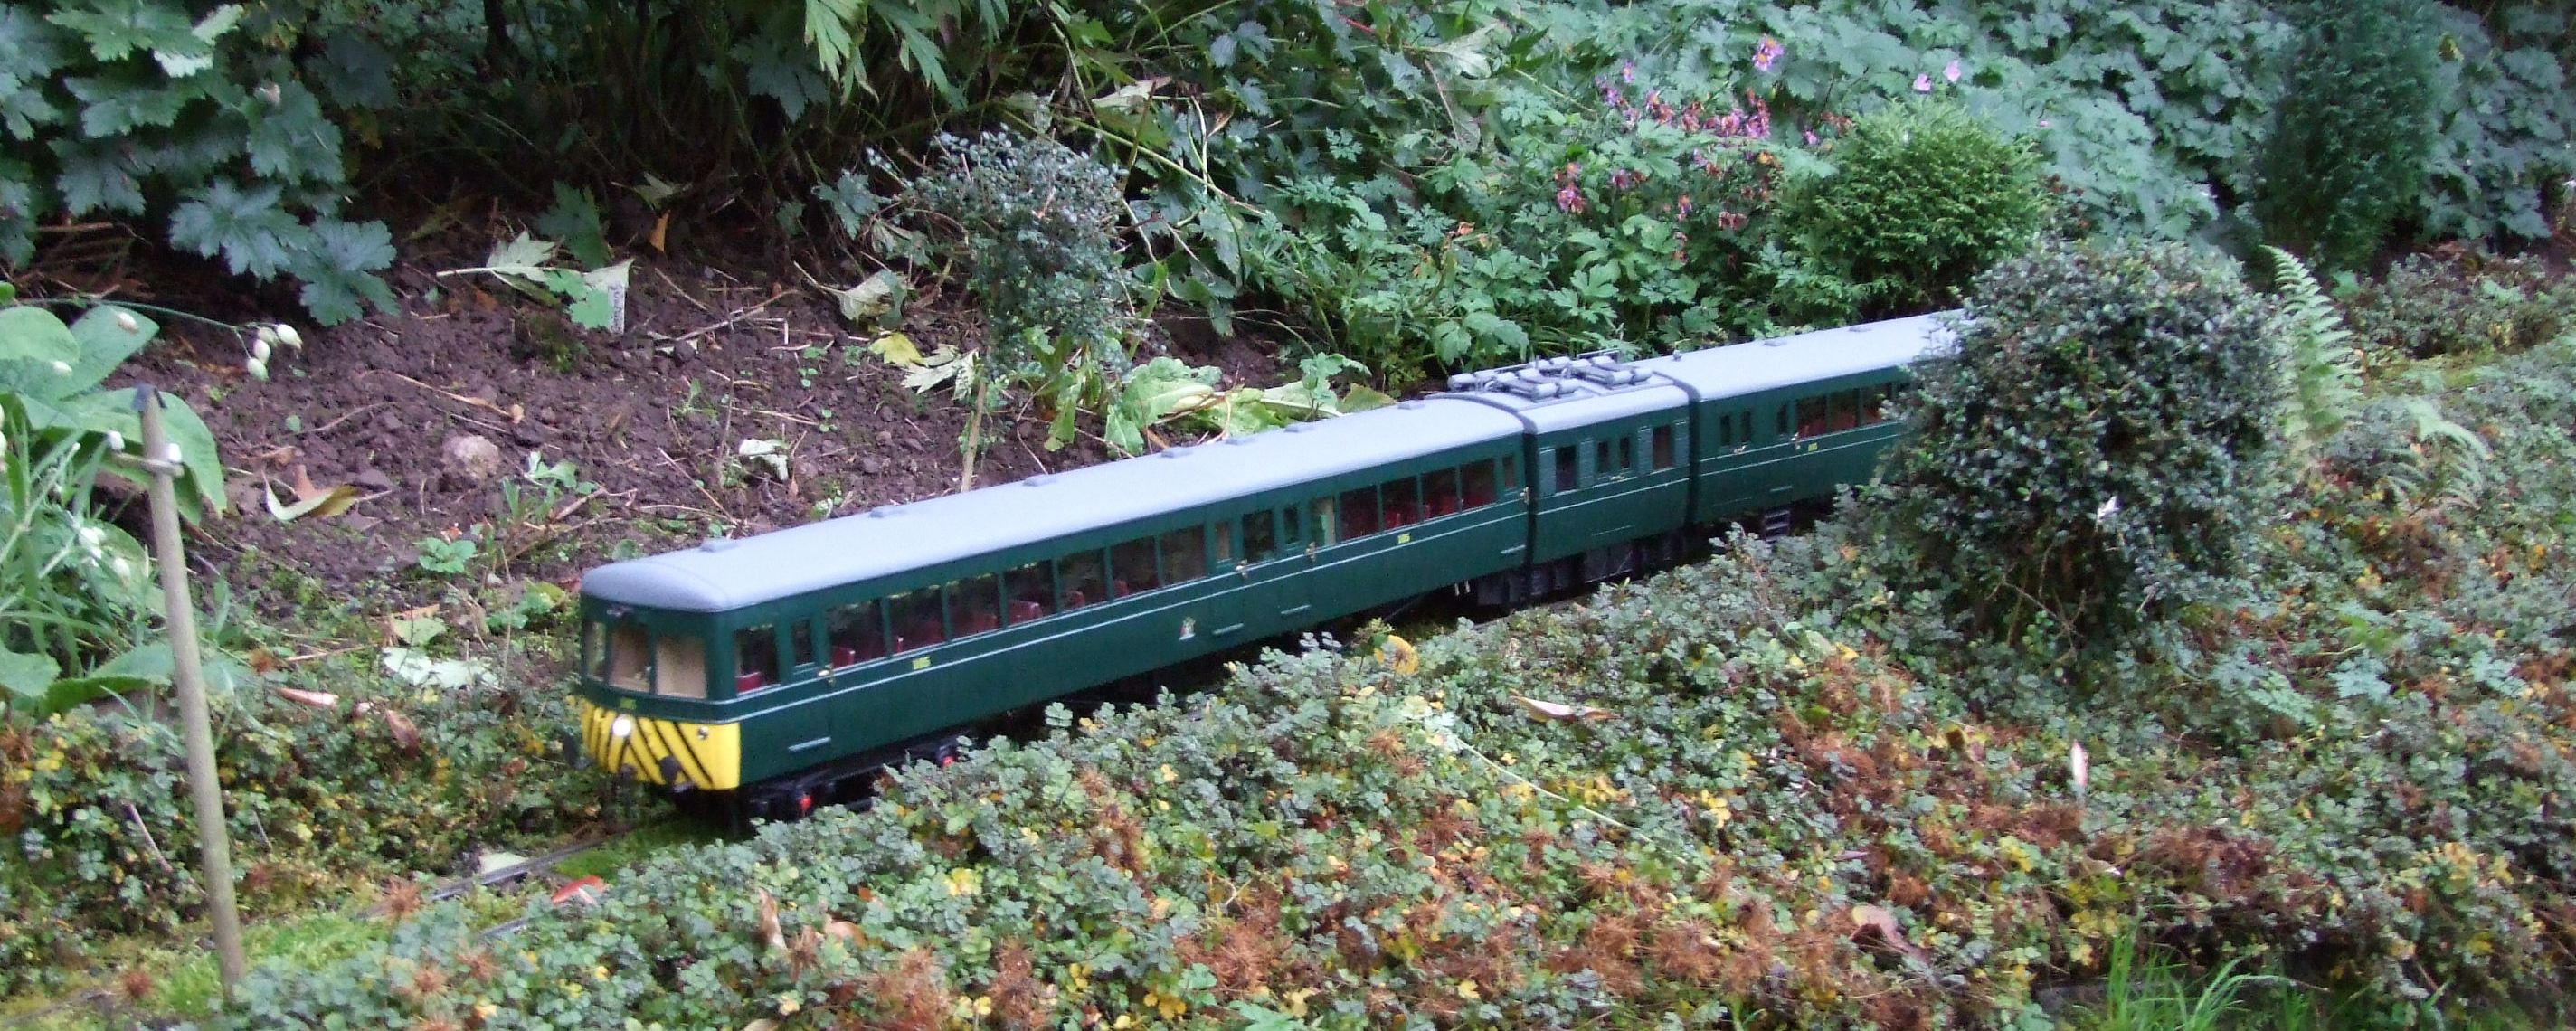 Neill Ramsay's railcar touring his garden.